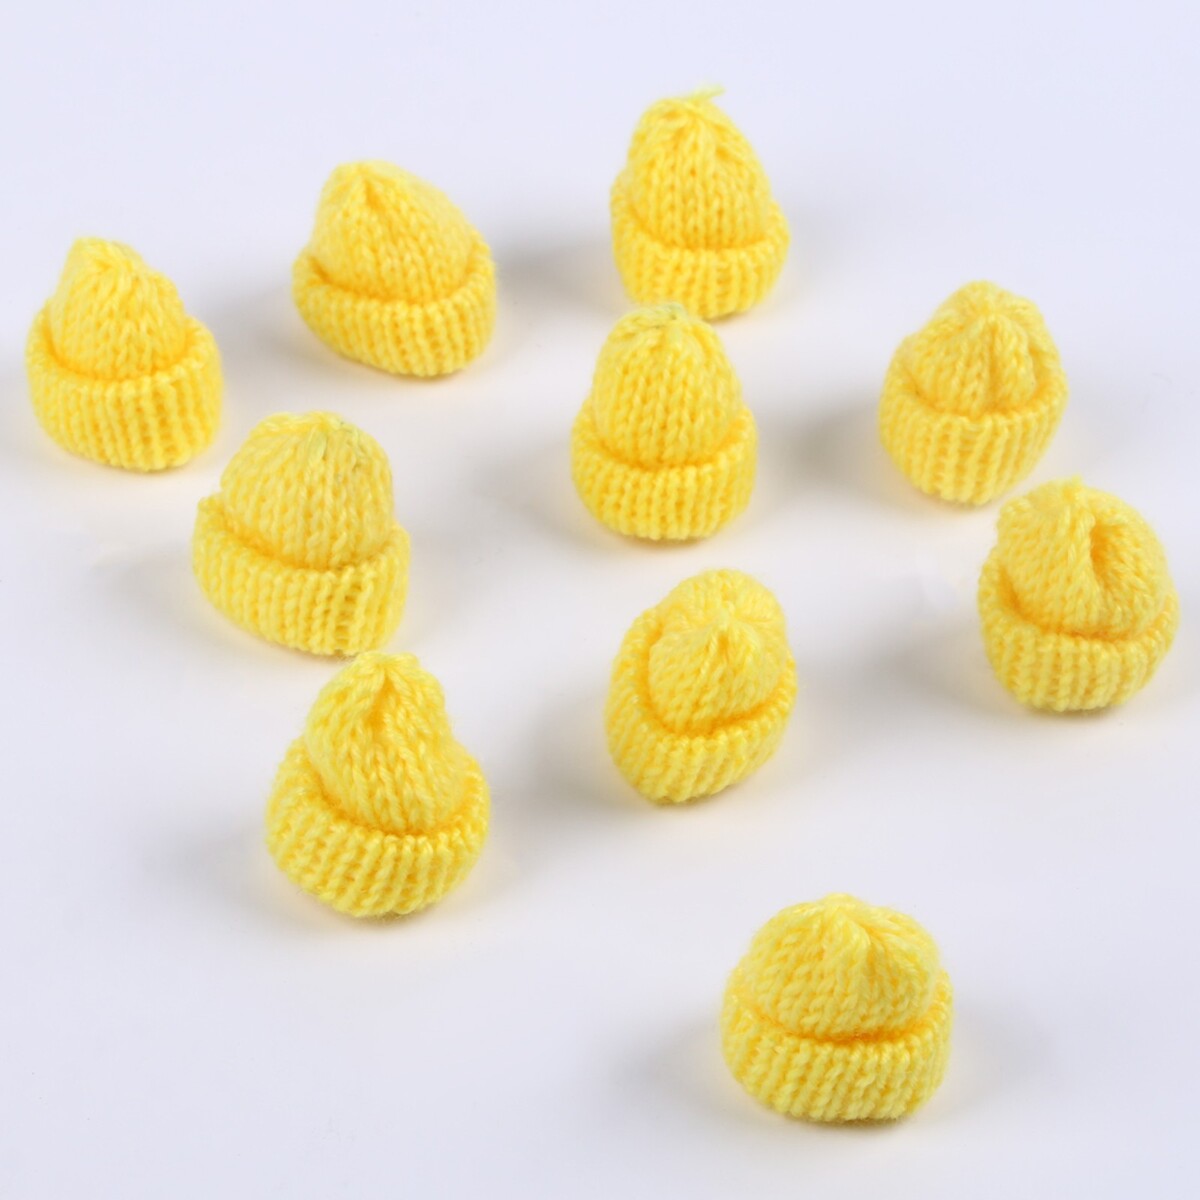 Шапка для игрушек вязаная, набор 10 шт., цвет желтый, размер 1 шт. — 3 × 4 см вязаная шапка